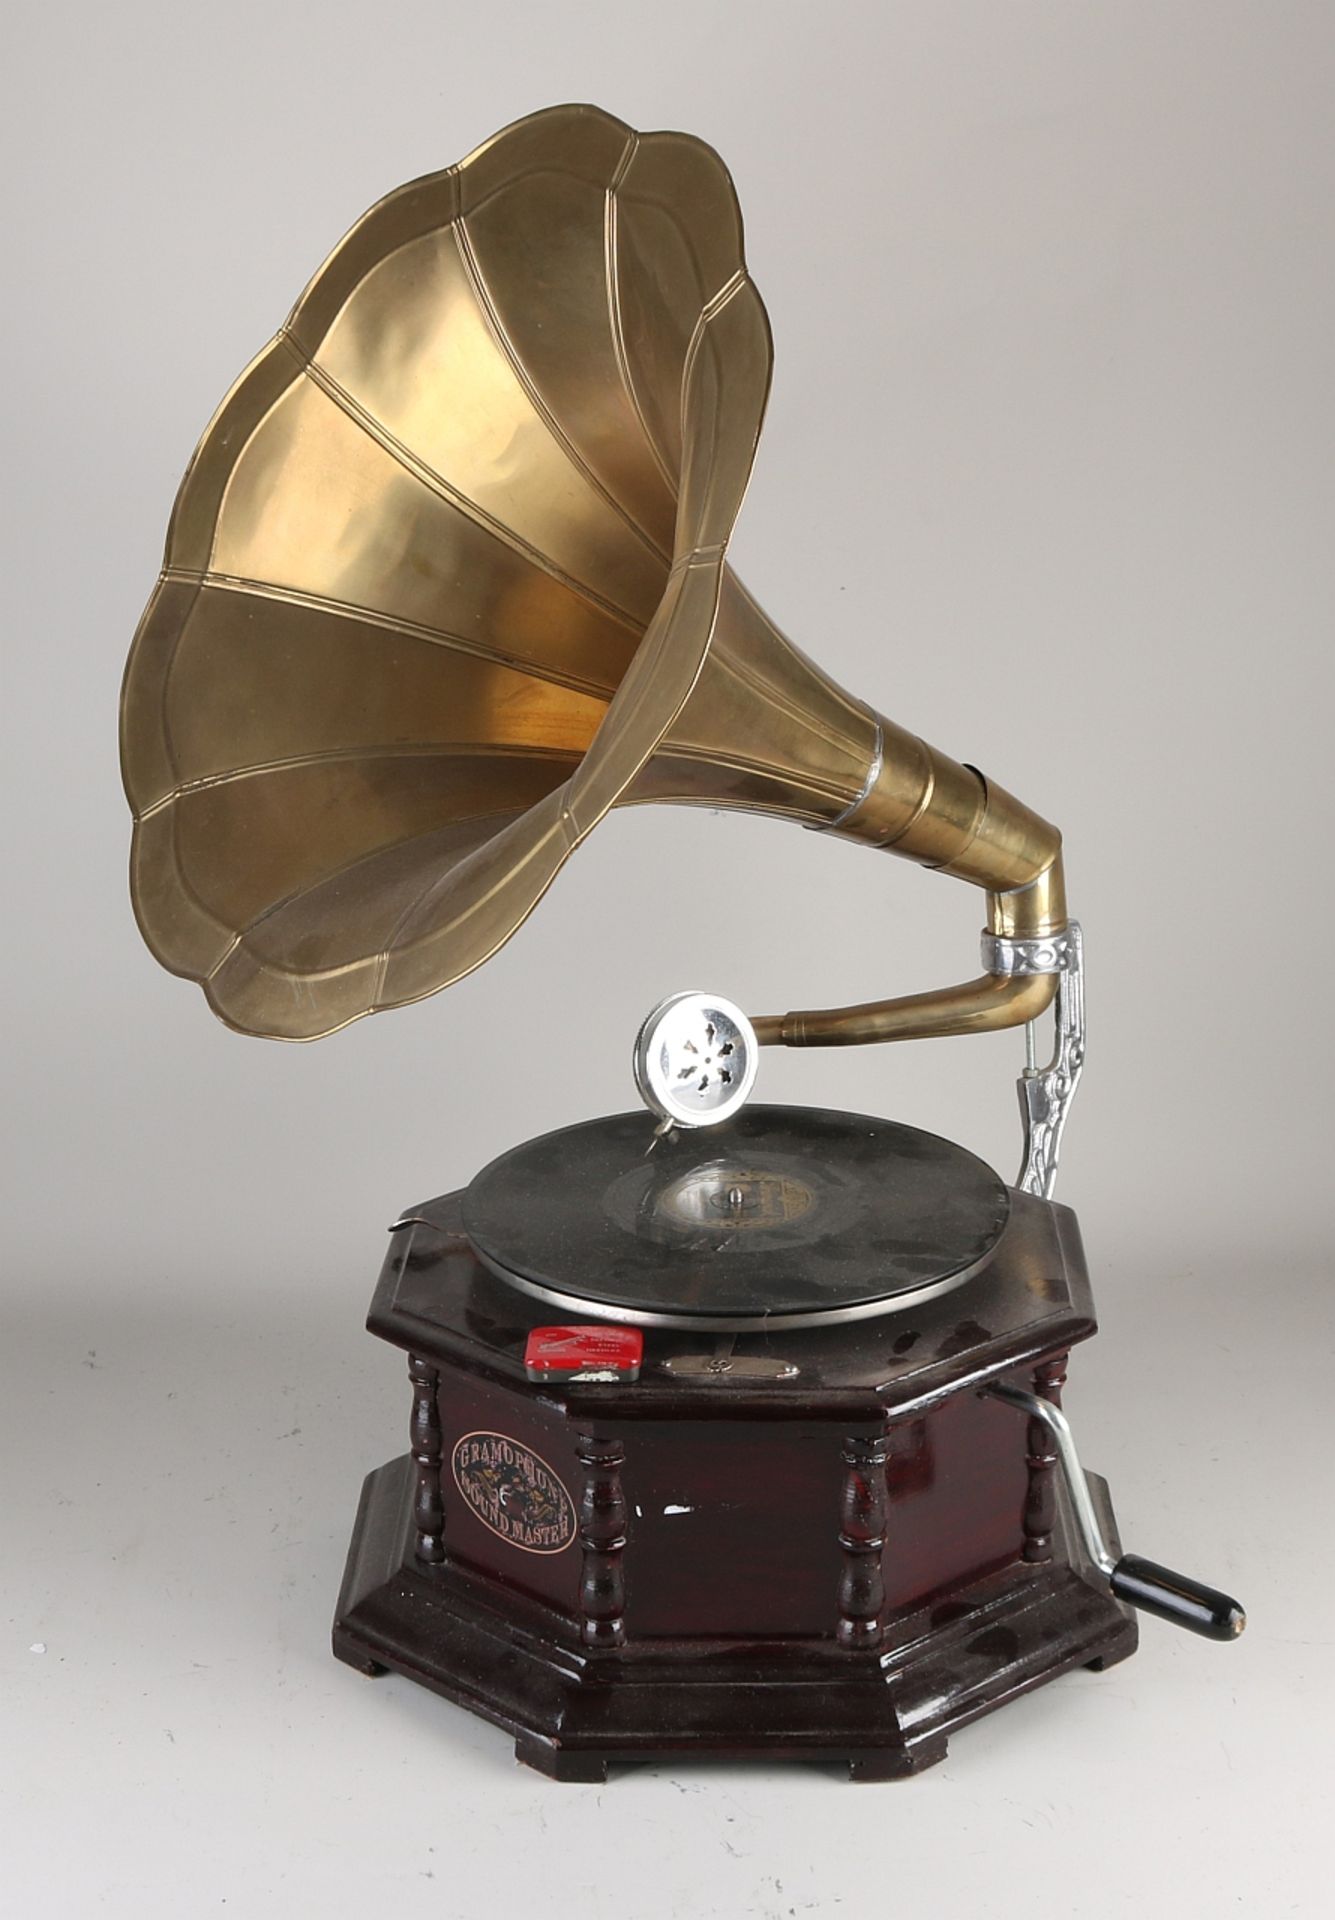 Altes achteckiges ebonisiertes Grammophon mit Messingtrichter. Grammofon Soundmaster. Nach altem